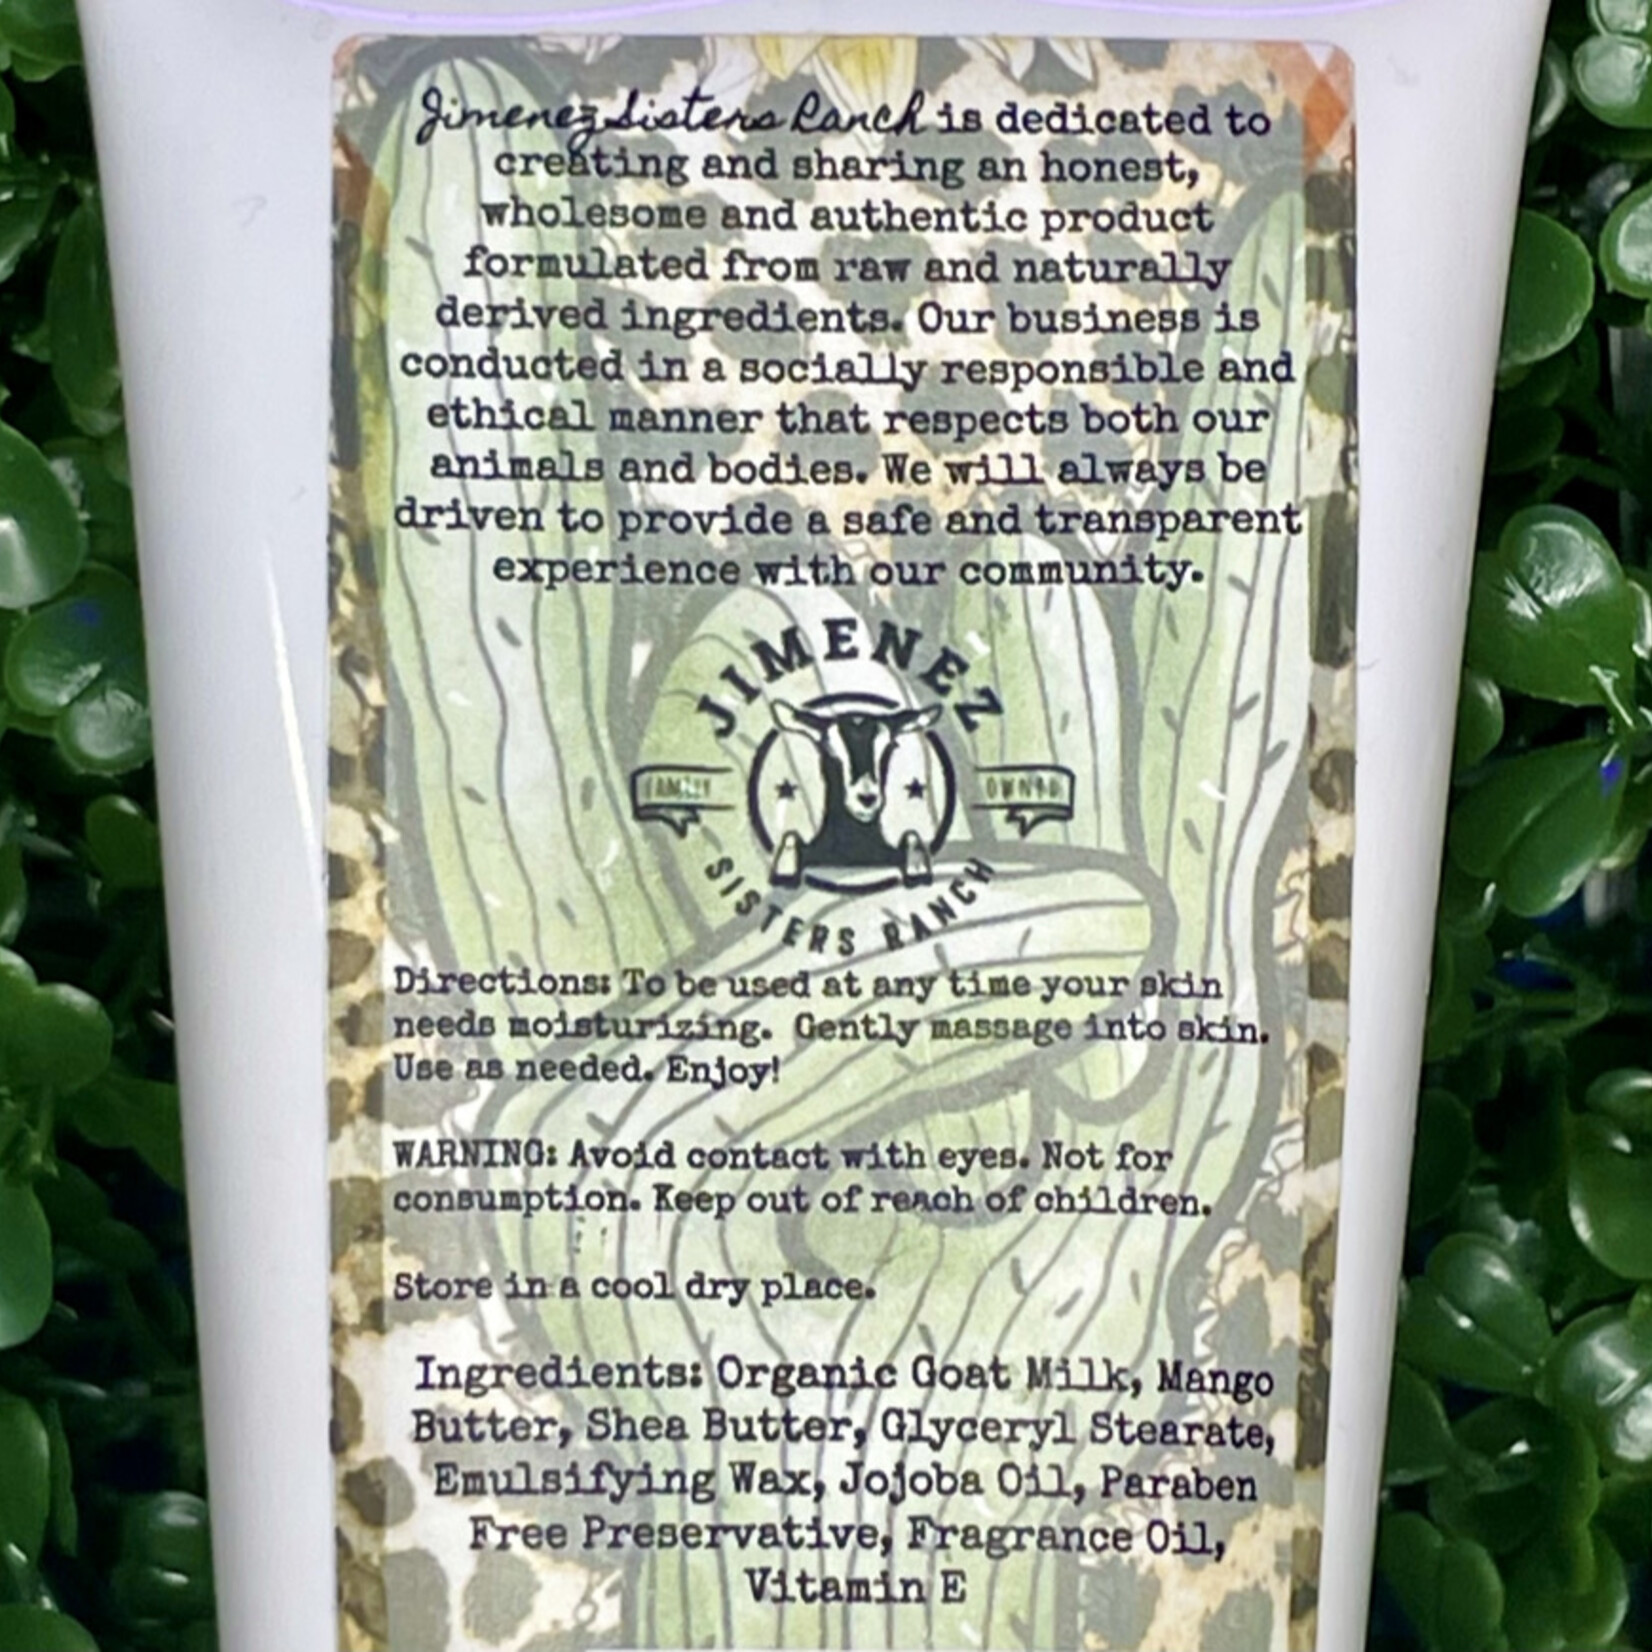 Emulsifying Wax - Organic Shoppe